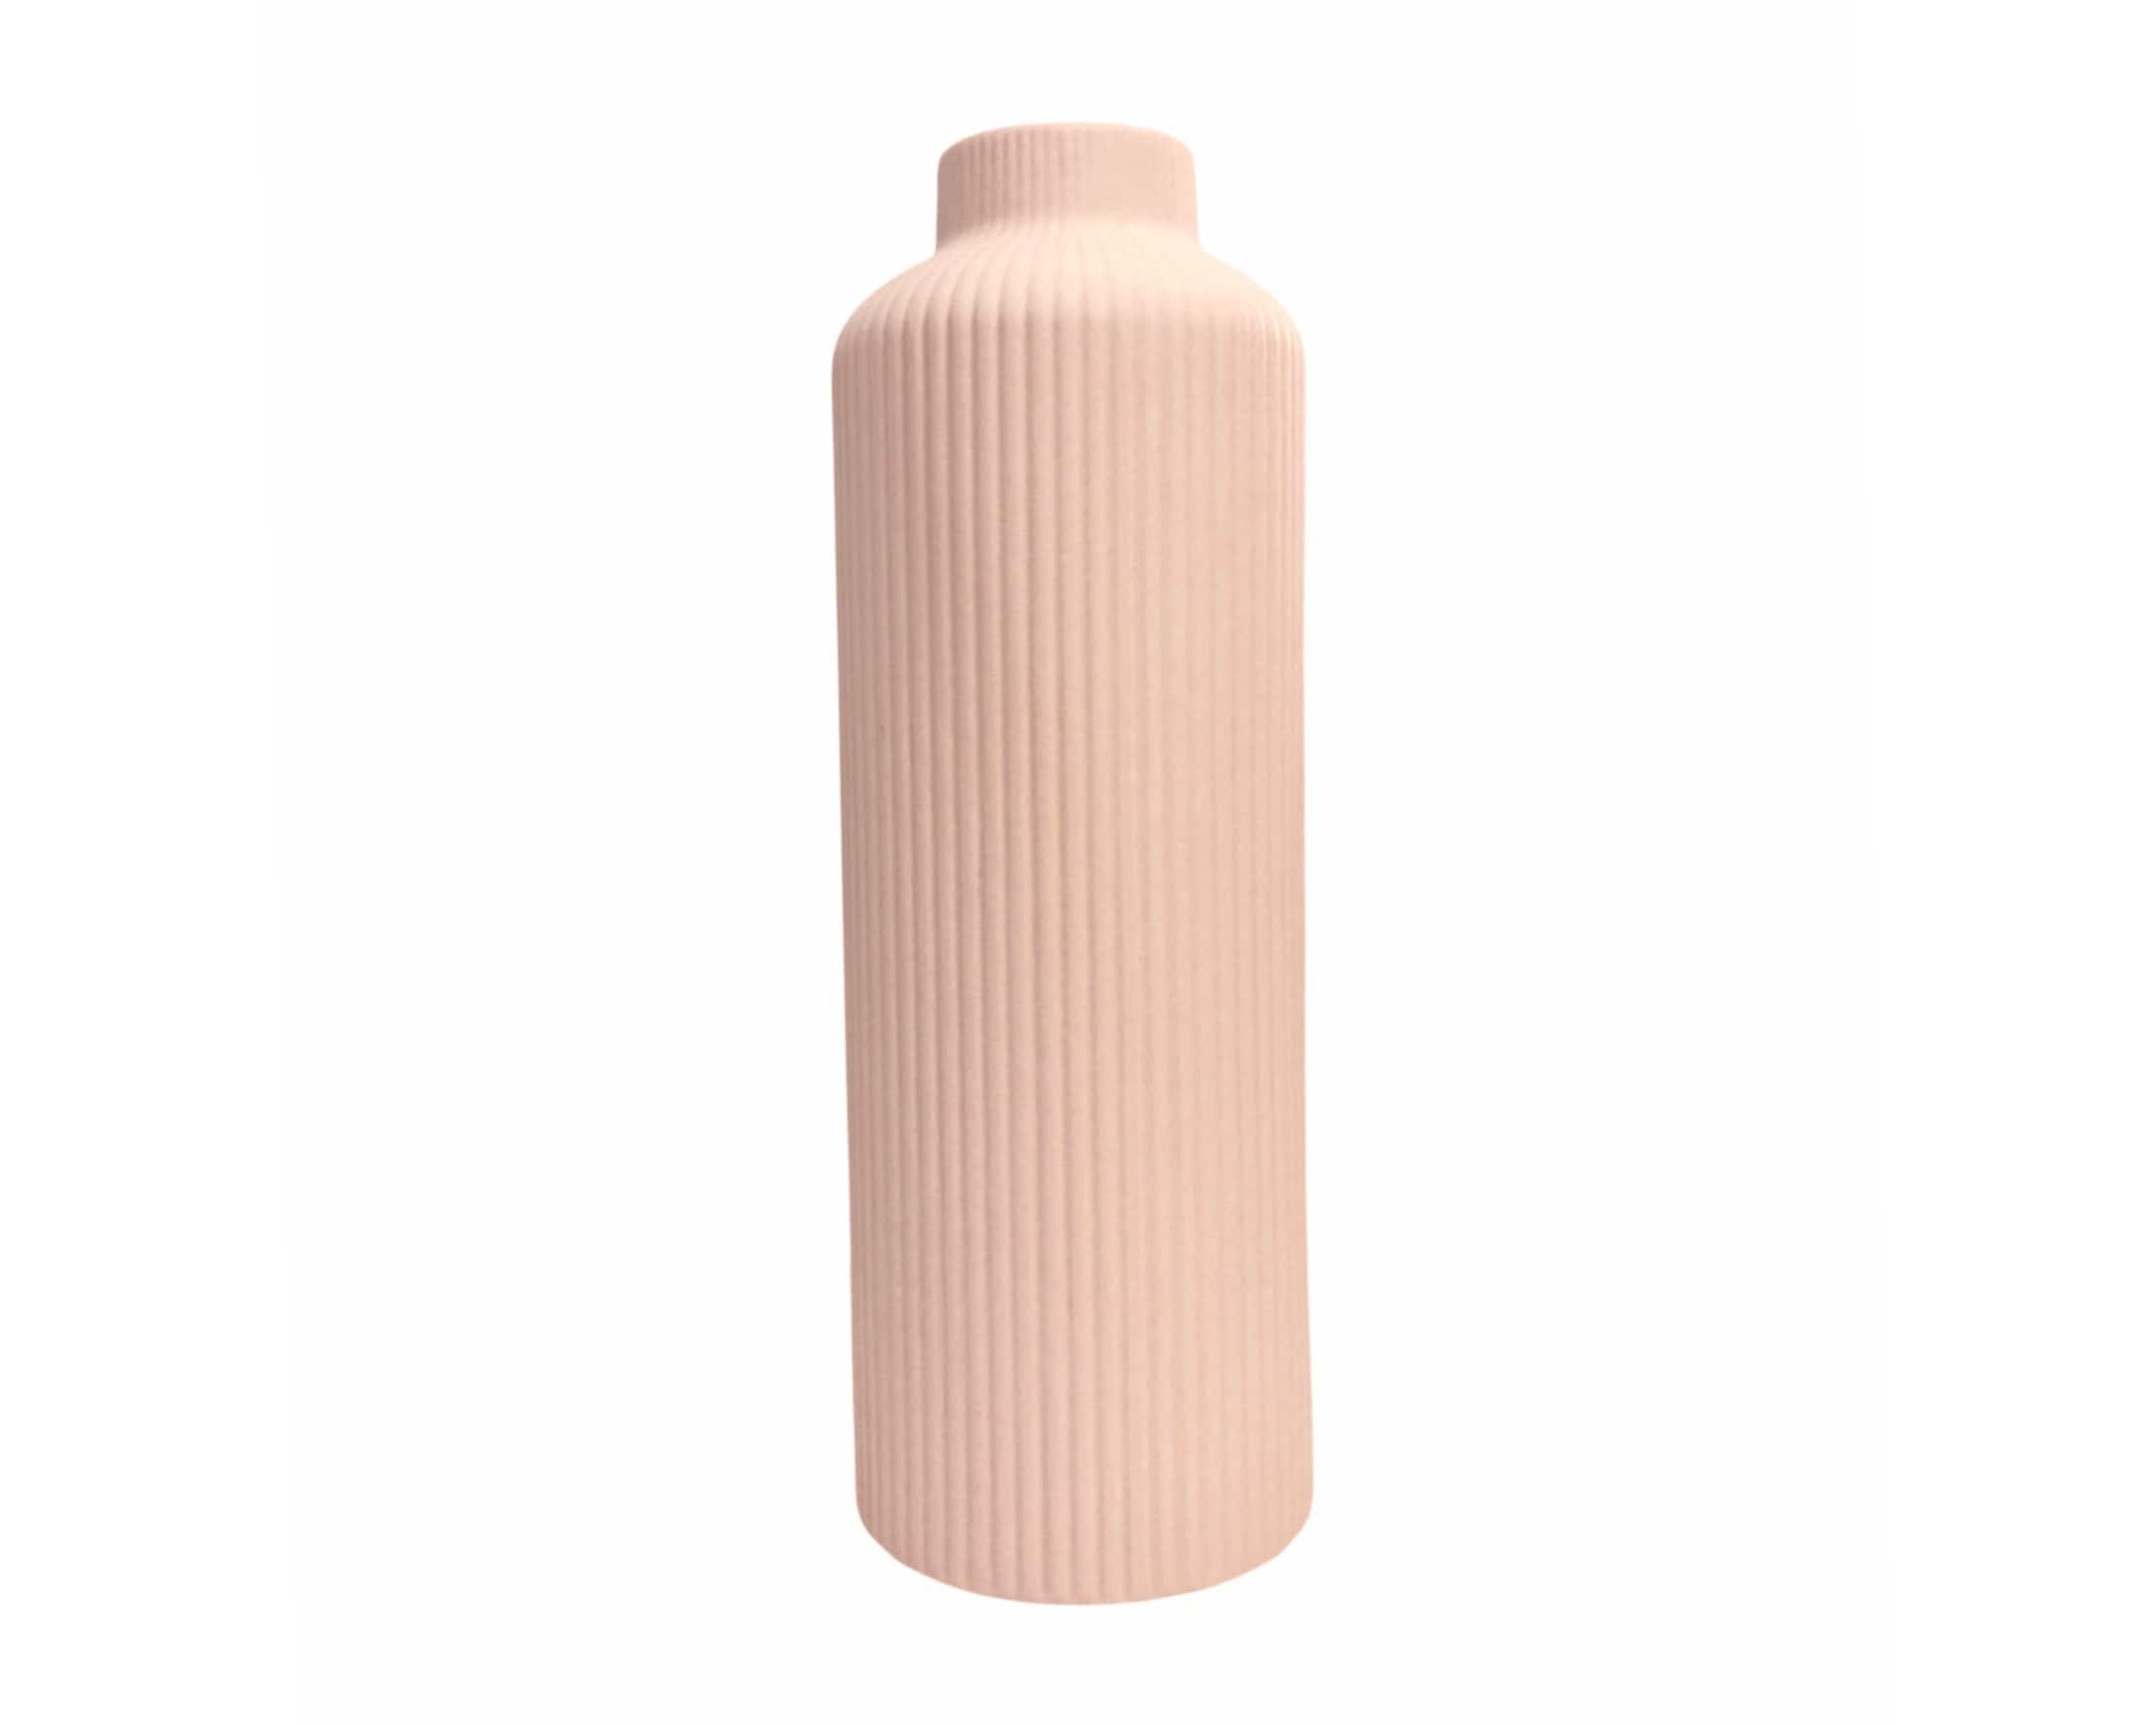 Vase | Keramik in zartem rosa | Teelichthalter - Roo's Gift Shop